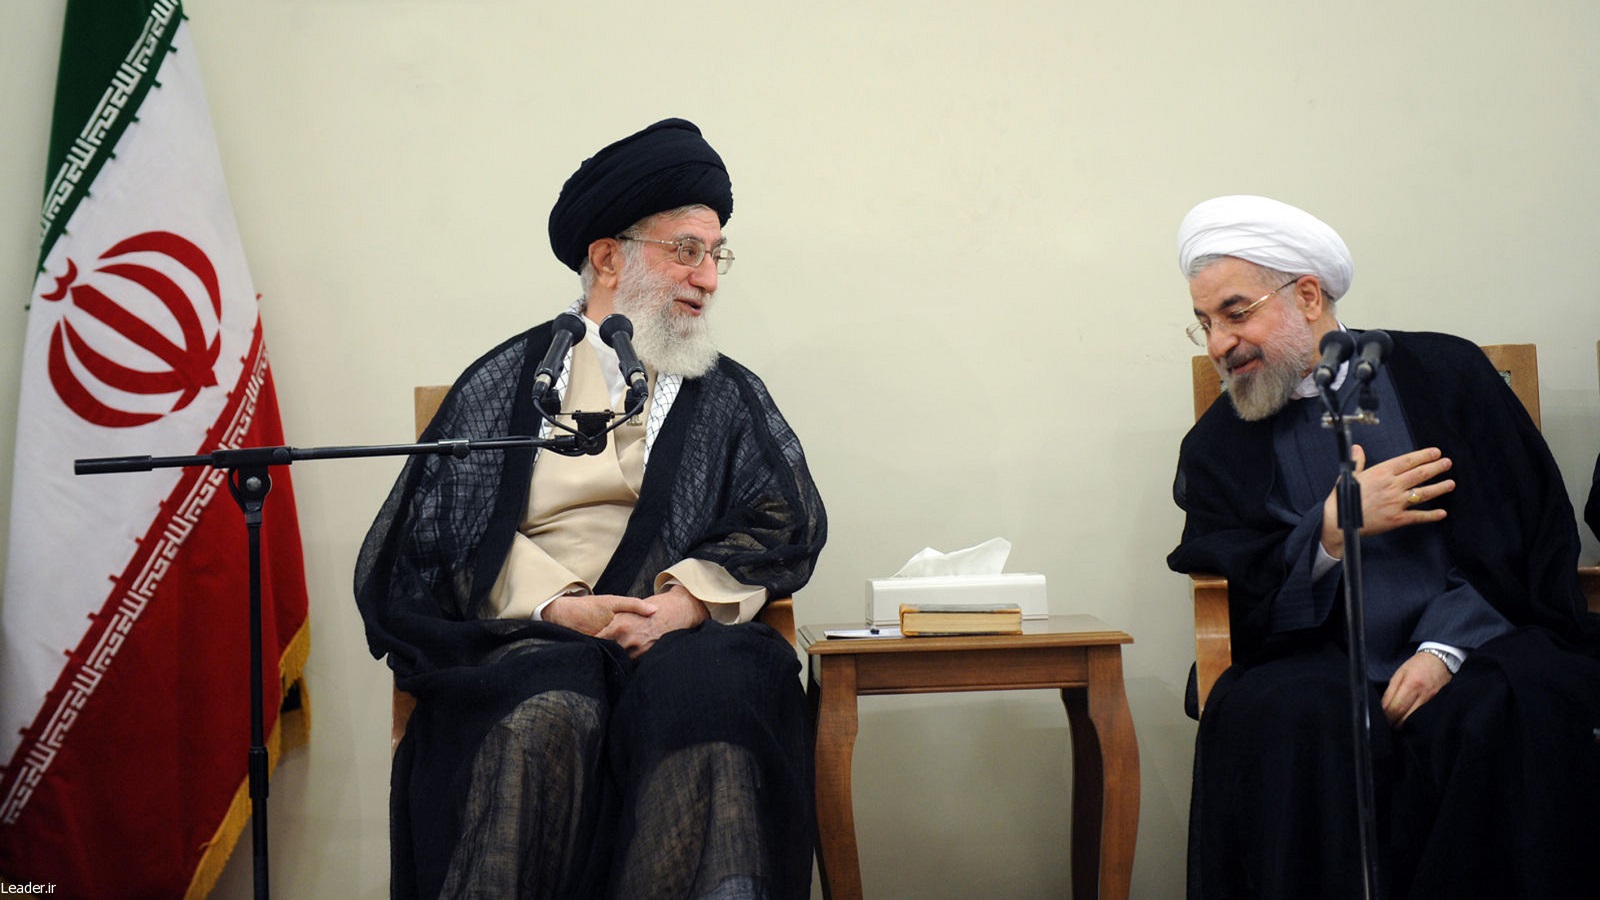 إيران:شرعية النظام..مدخل لتسوية رئاسية